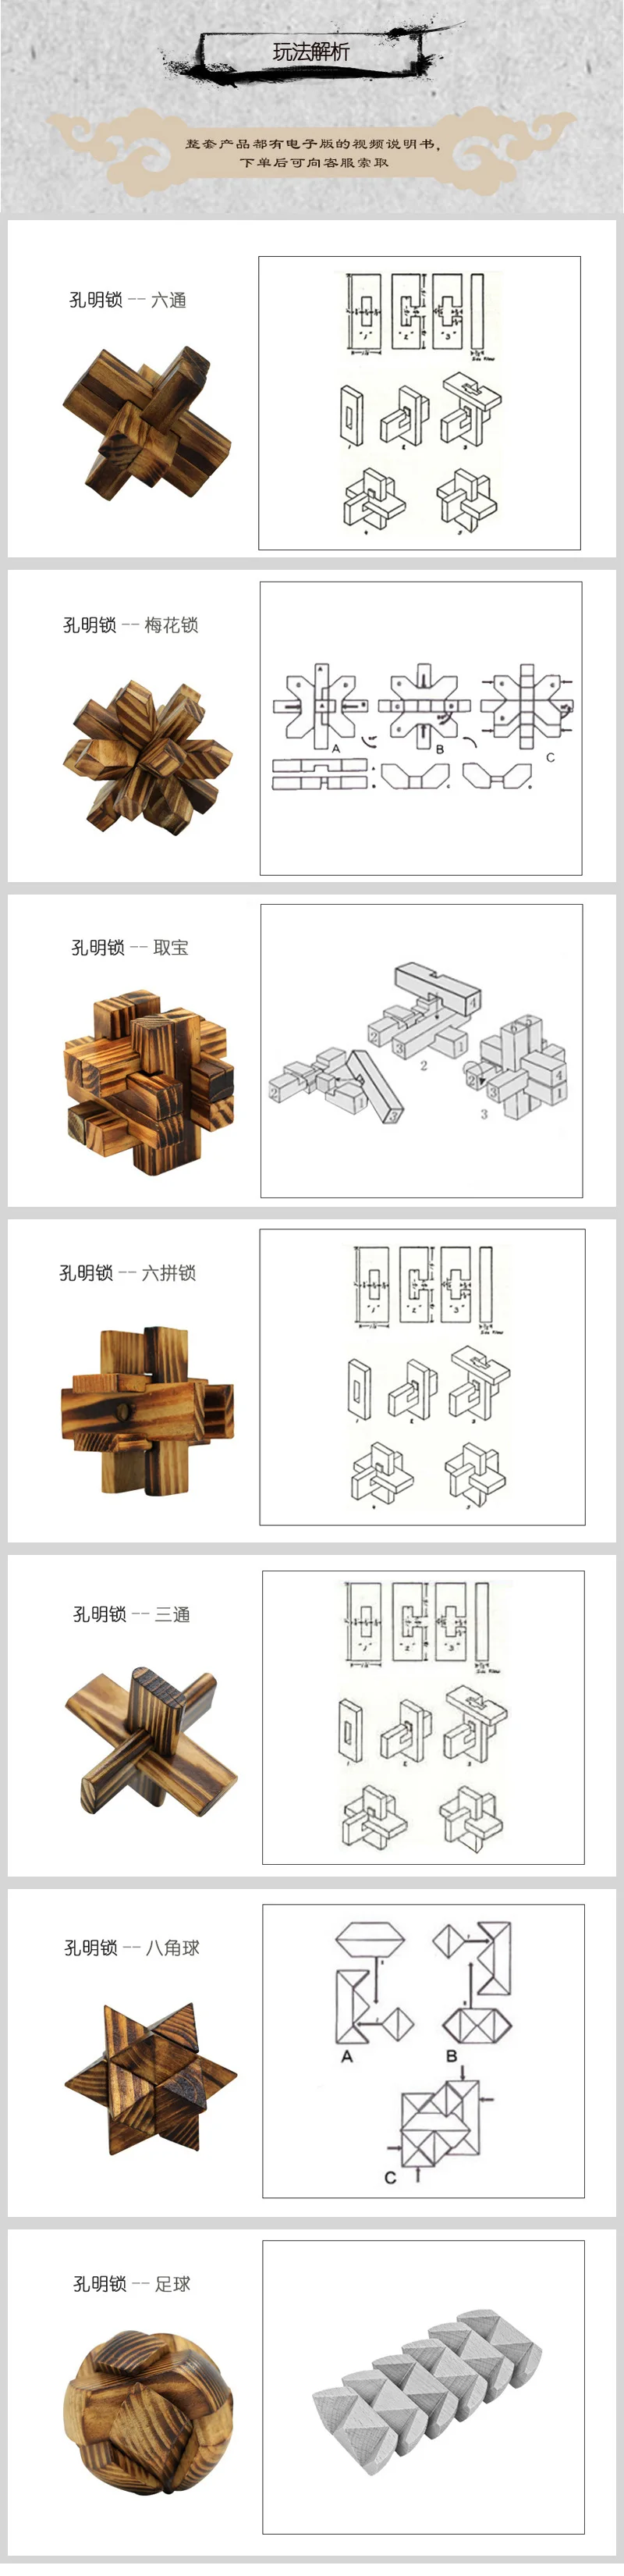 3D деревянные головоломки для повышения IQ головоломка деревянная Блокировка игра игрушка головоломка интеллектуальное обучение Развивающие для взрослых Детский подарок